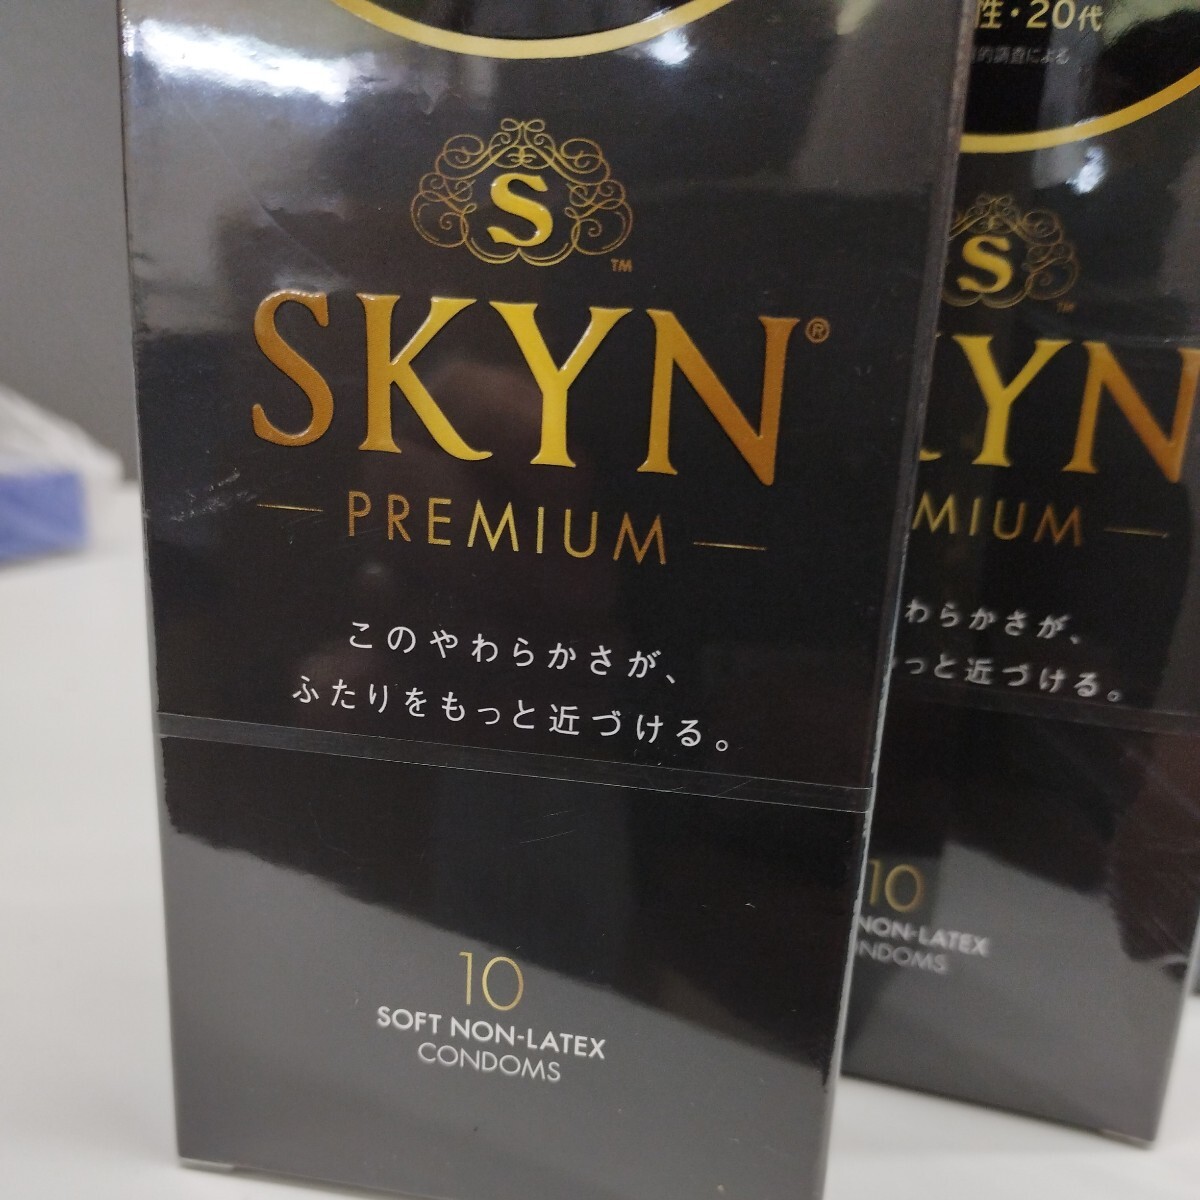 0604y2502 SKYN (スキン) Premiumコンドーム 10個入 × 3箱セット 【柔らか素材で自然な使用感】 不二ラテックス コンドーム ※同梱不可※の画像2